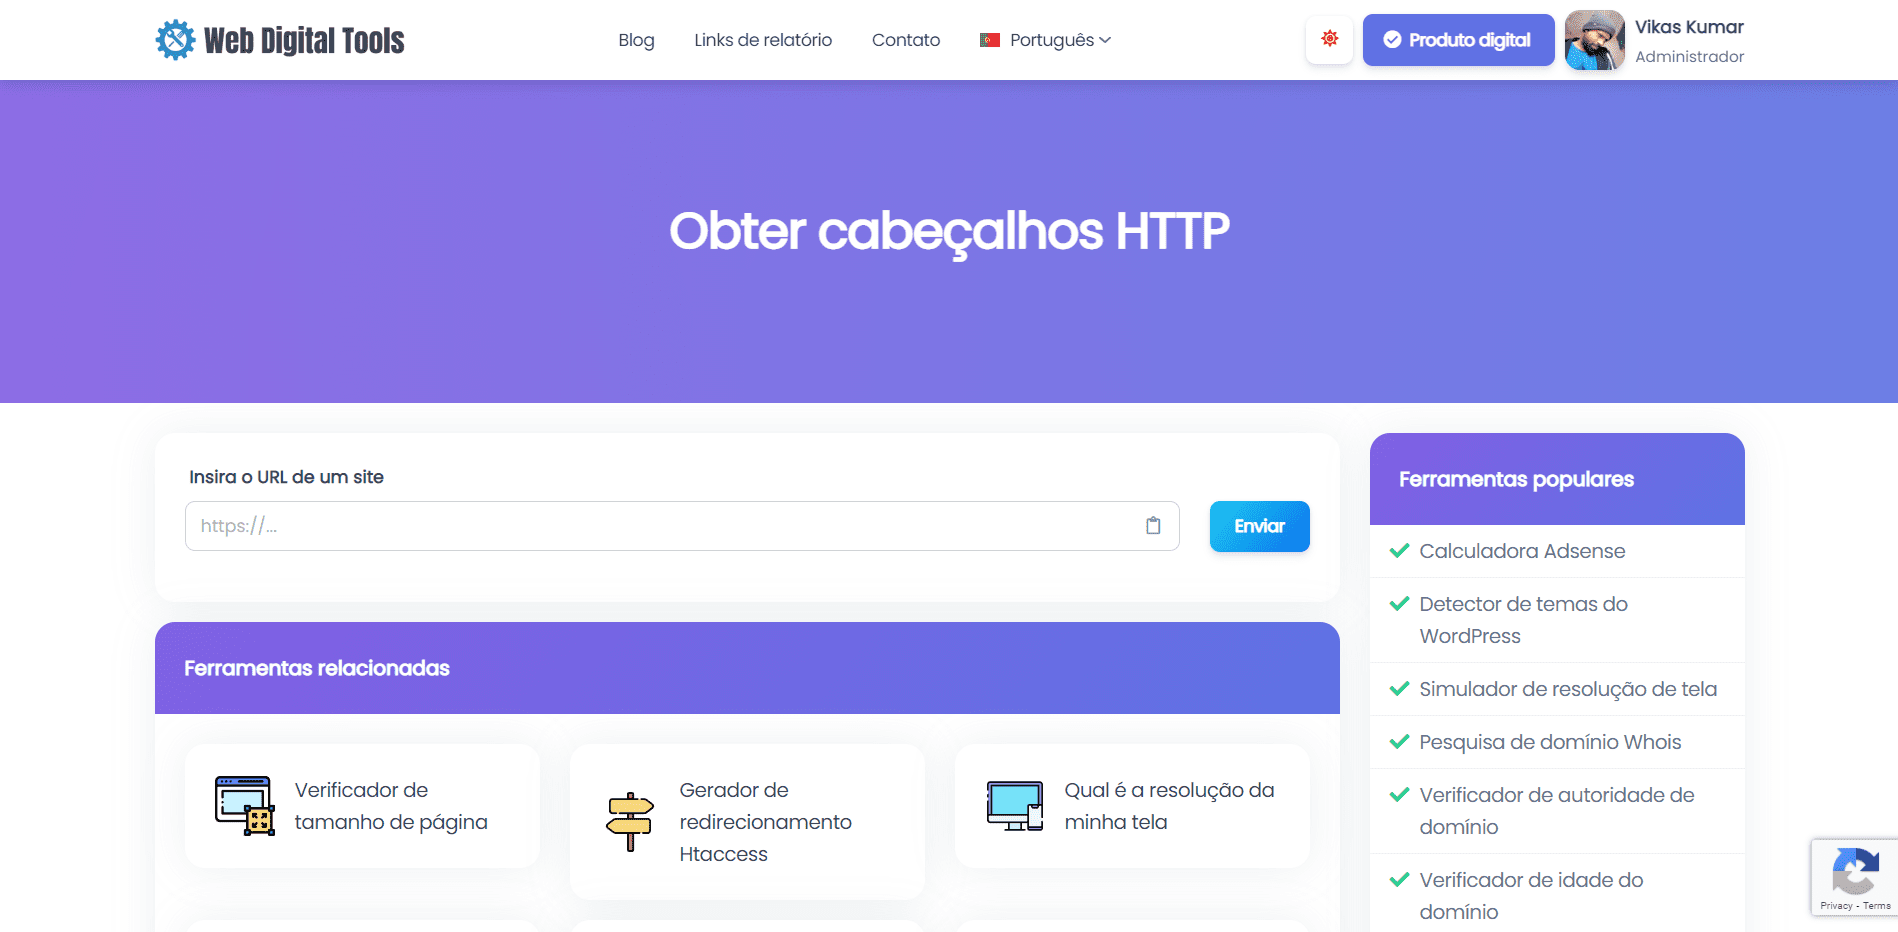 Obter cabeçalhos HTTP